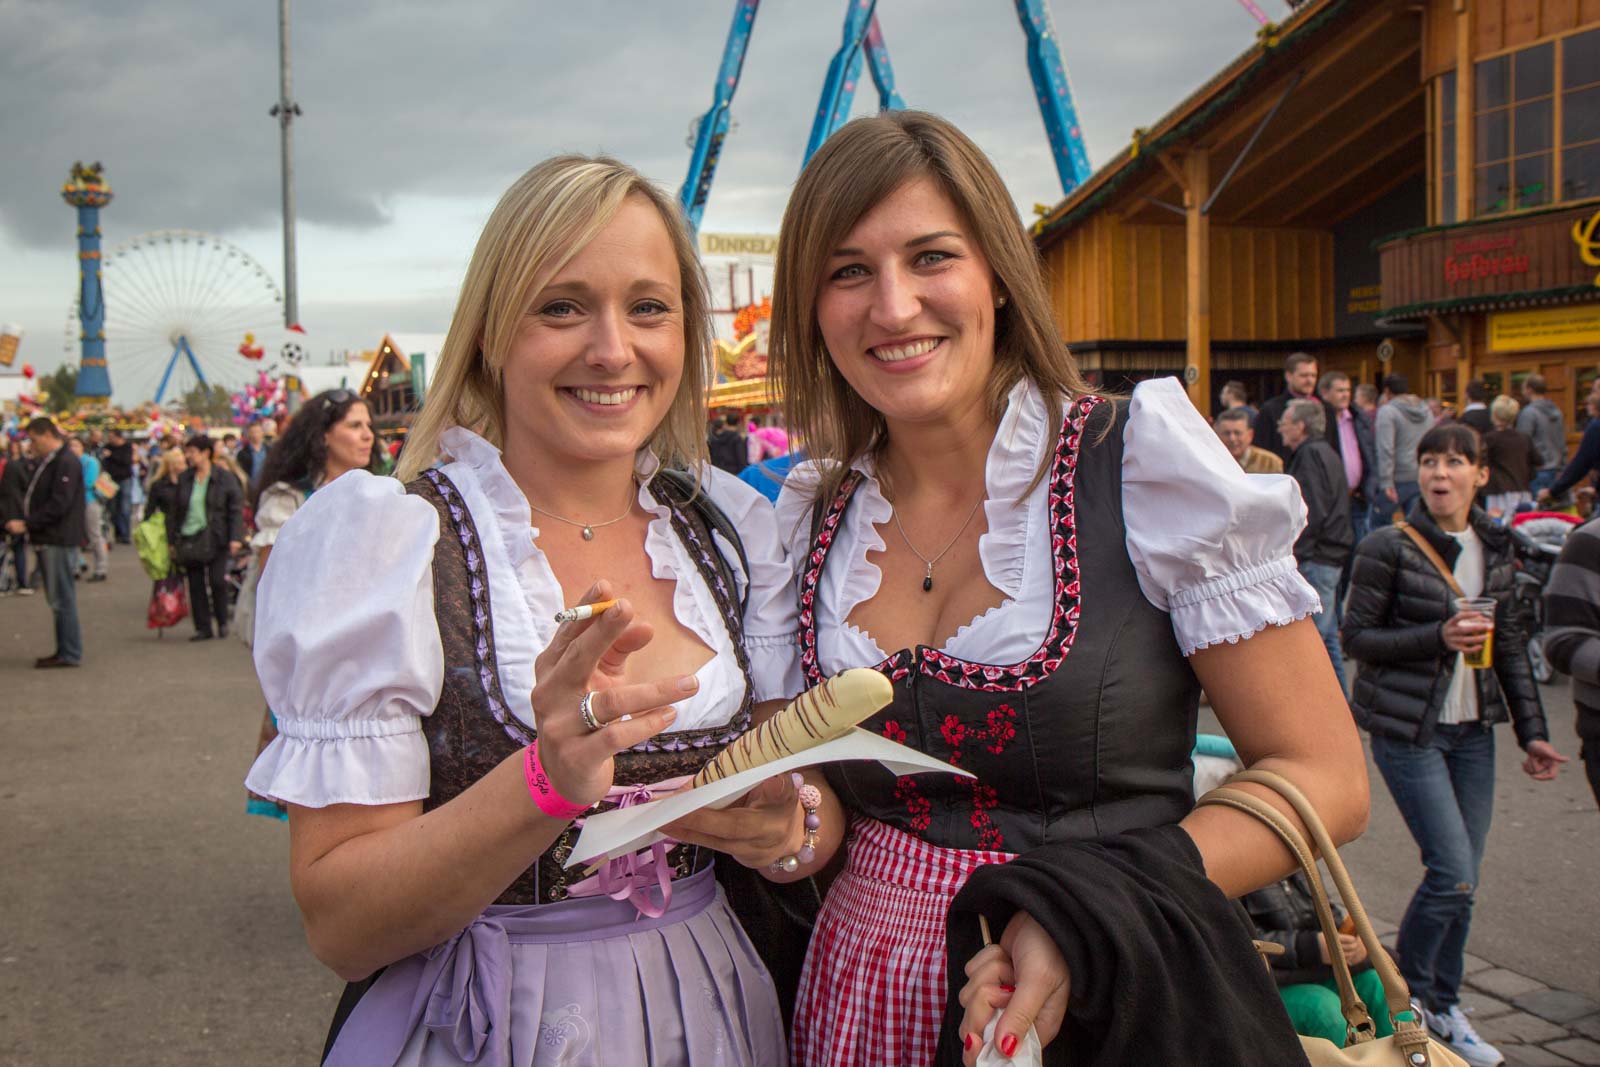 The Cannstatter Volksfest - Stuttgart's Beer Festival